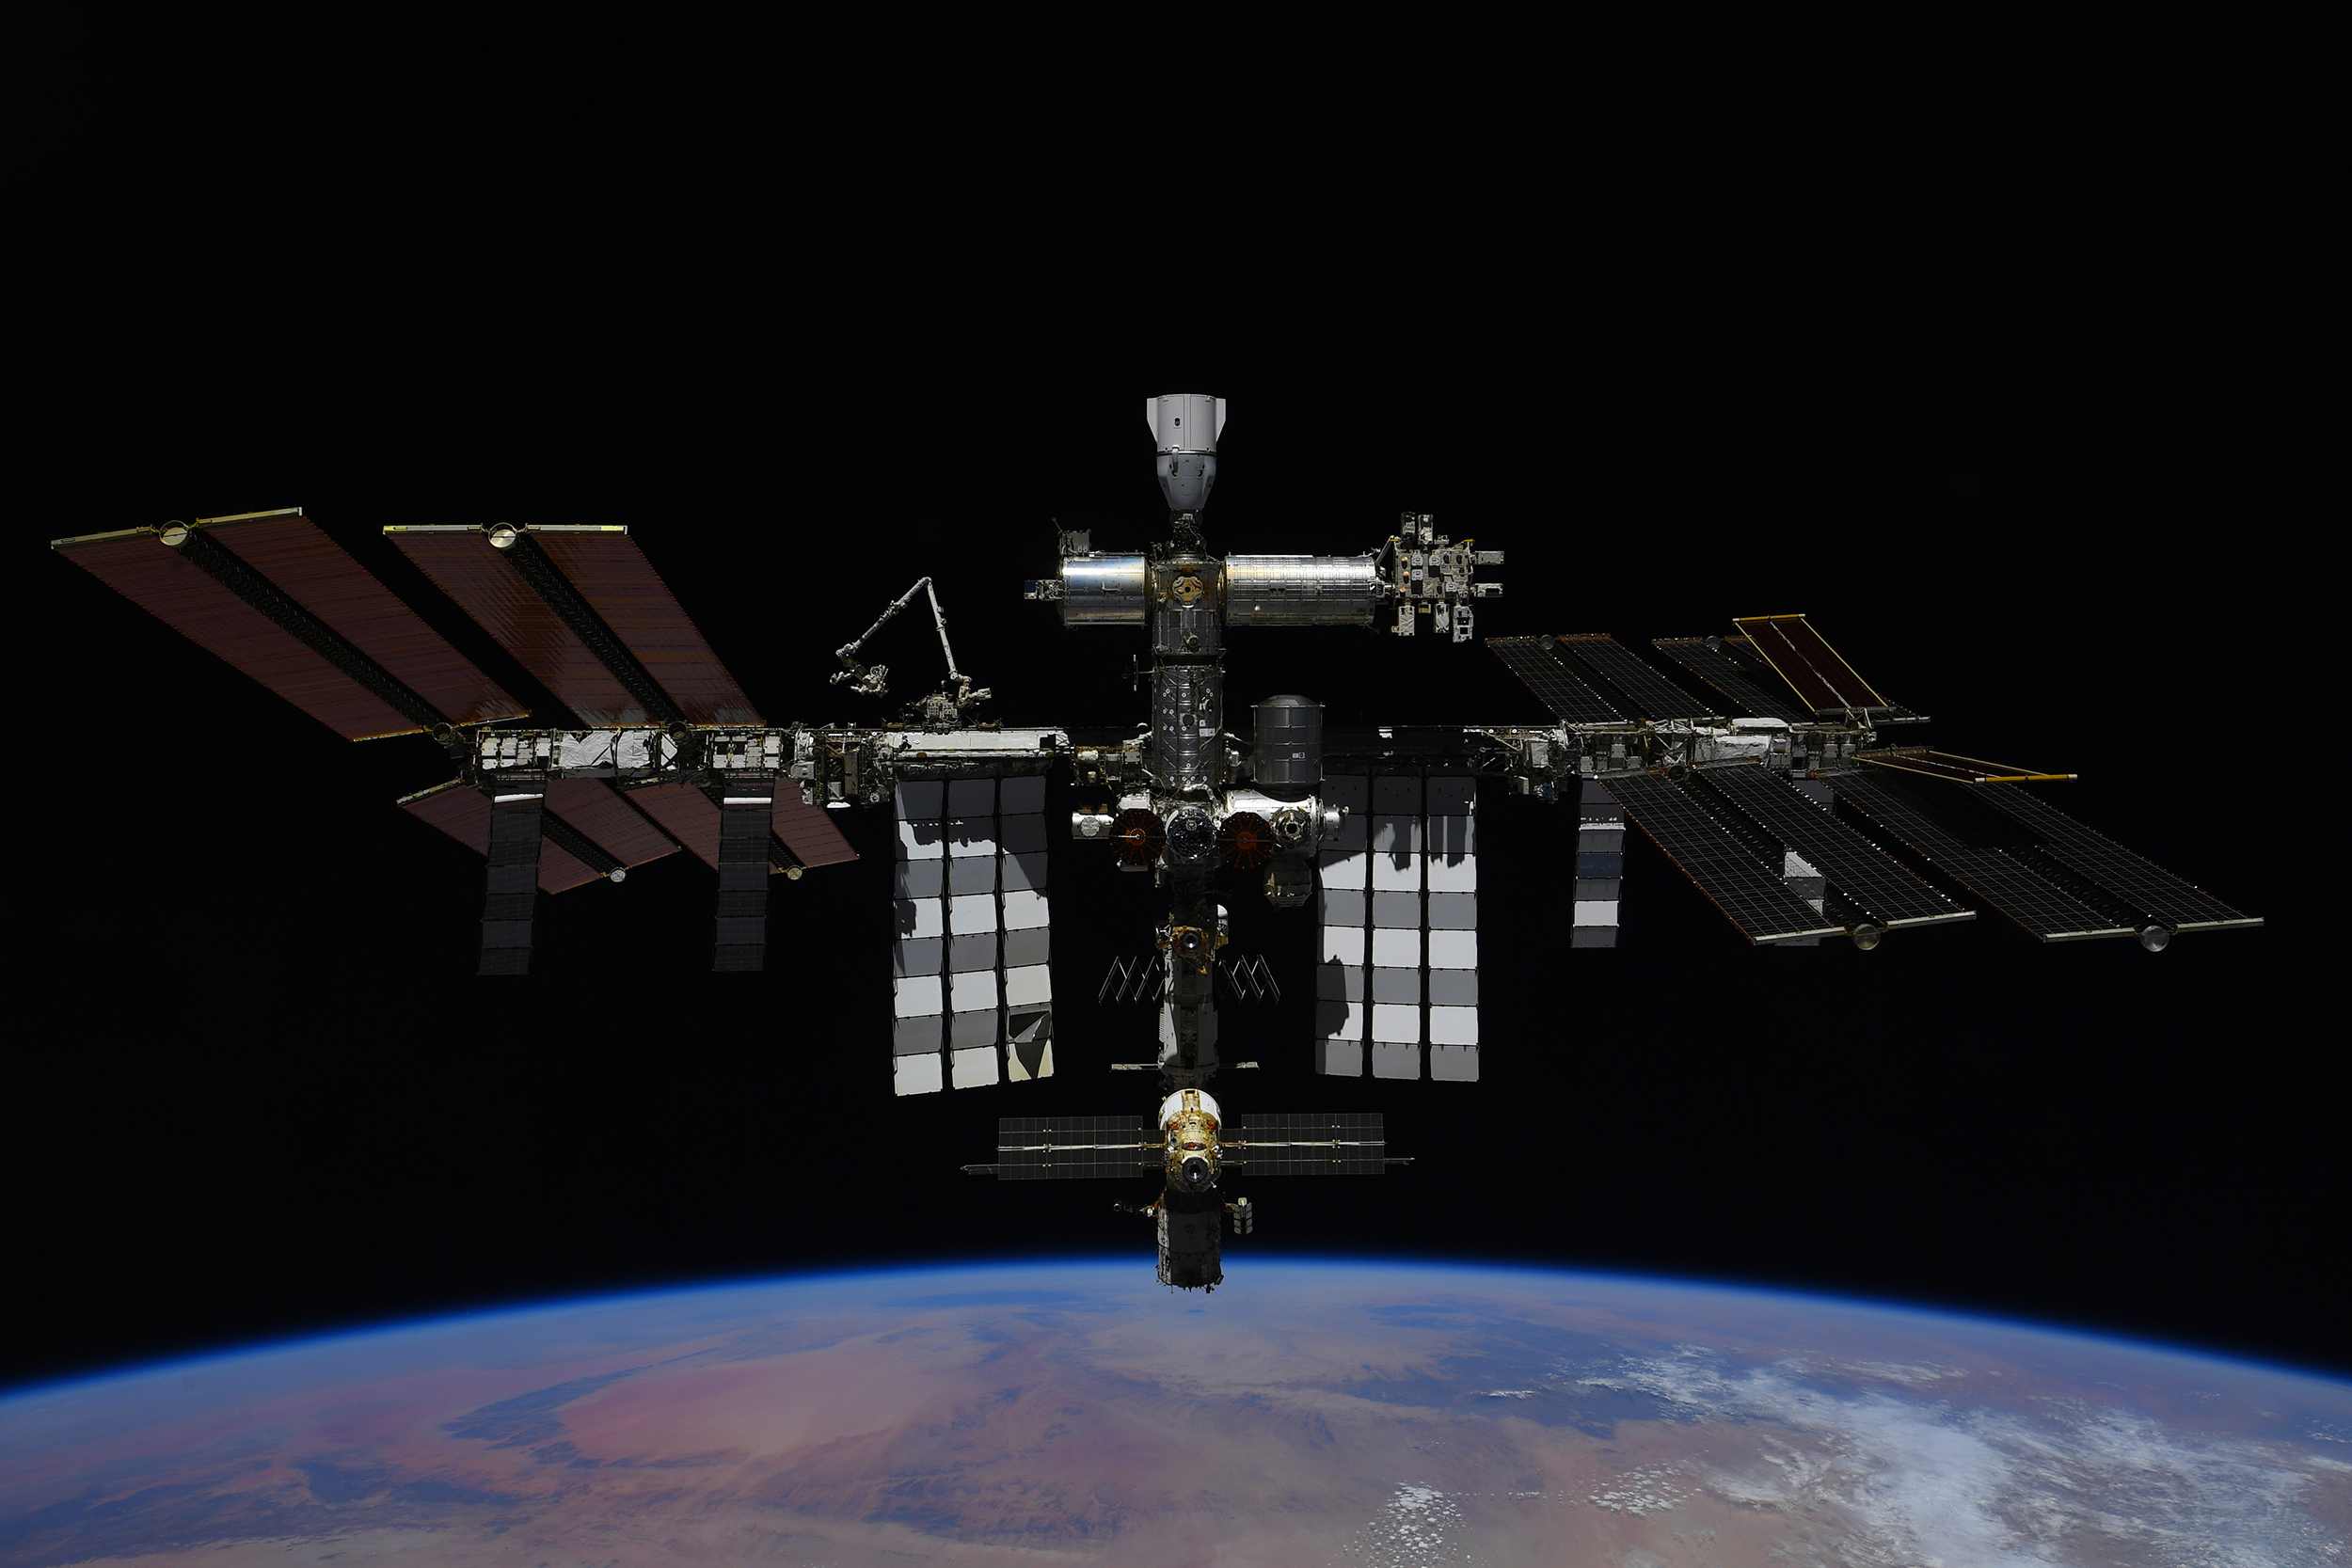 La Station spatiale internationale vue depuis un véhicule Soyouz. © Roscosmos, P. Dubrov